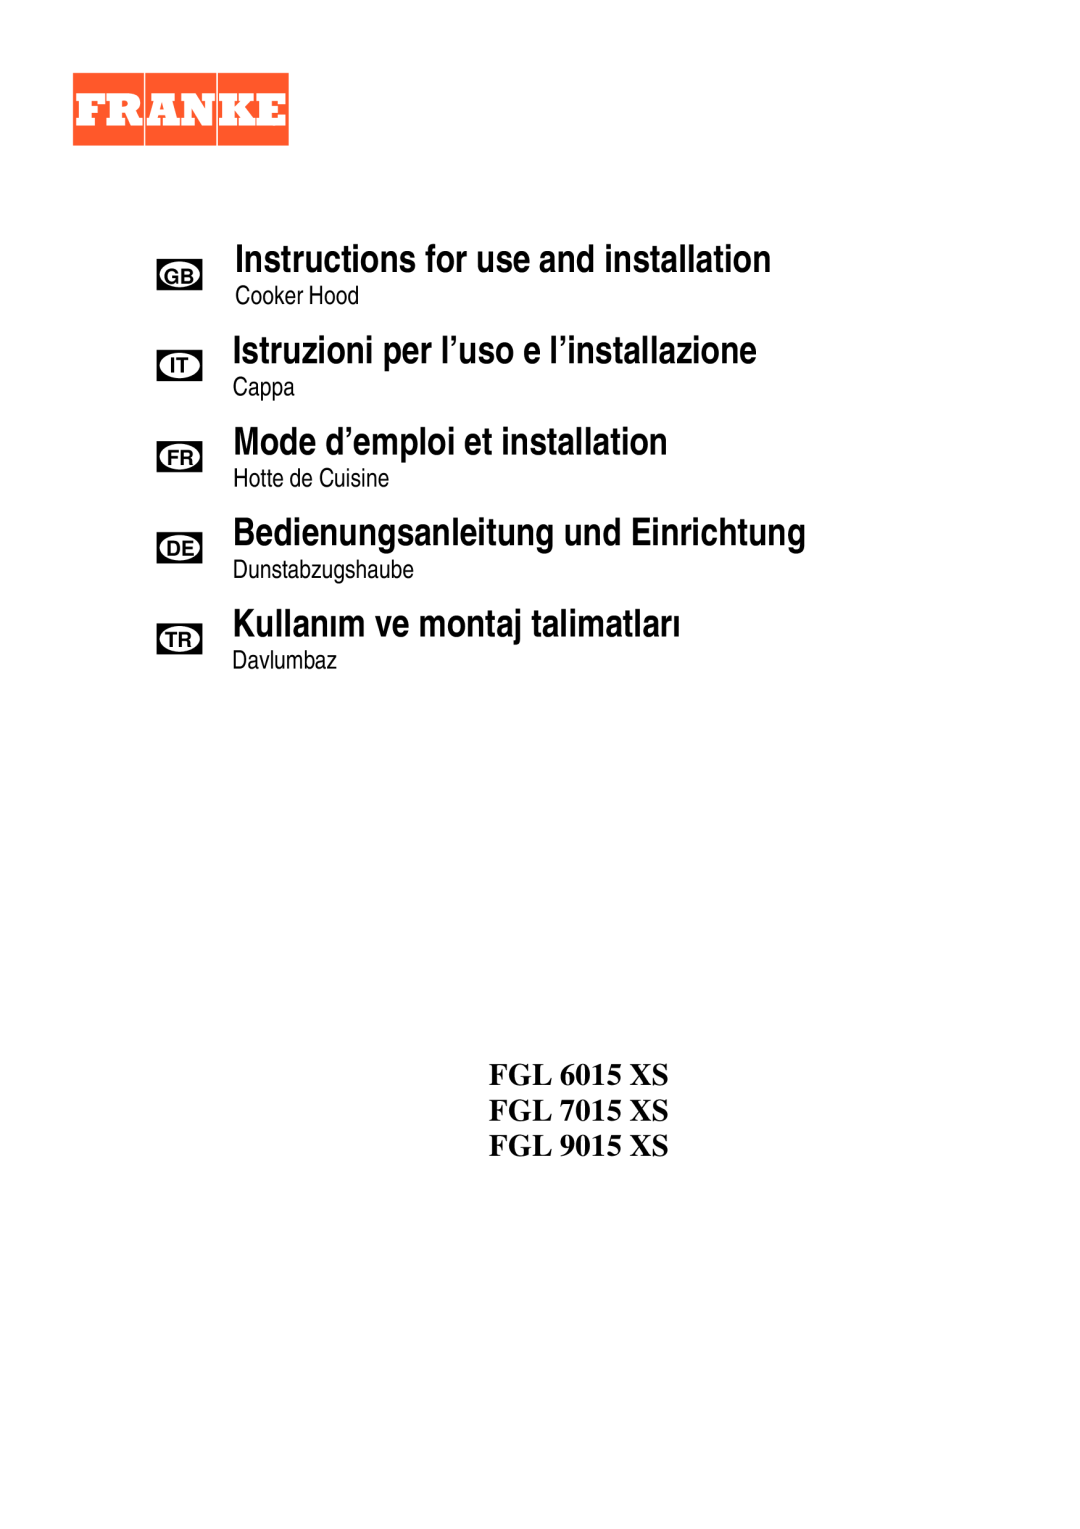 Franke Consumer Products FGL 7015 XS manual Instructions for use and installation, Istruzioni per l’uso e l’installazione 